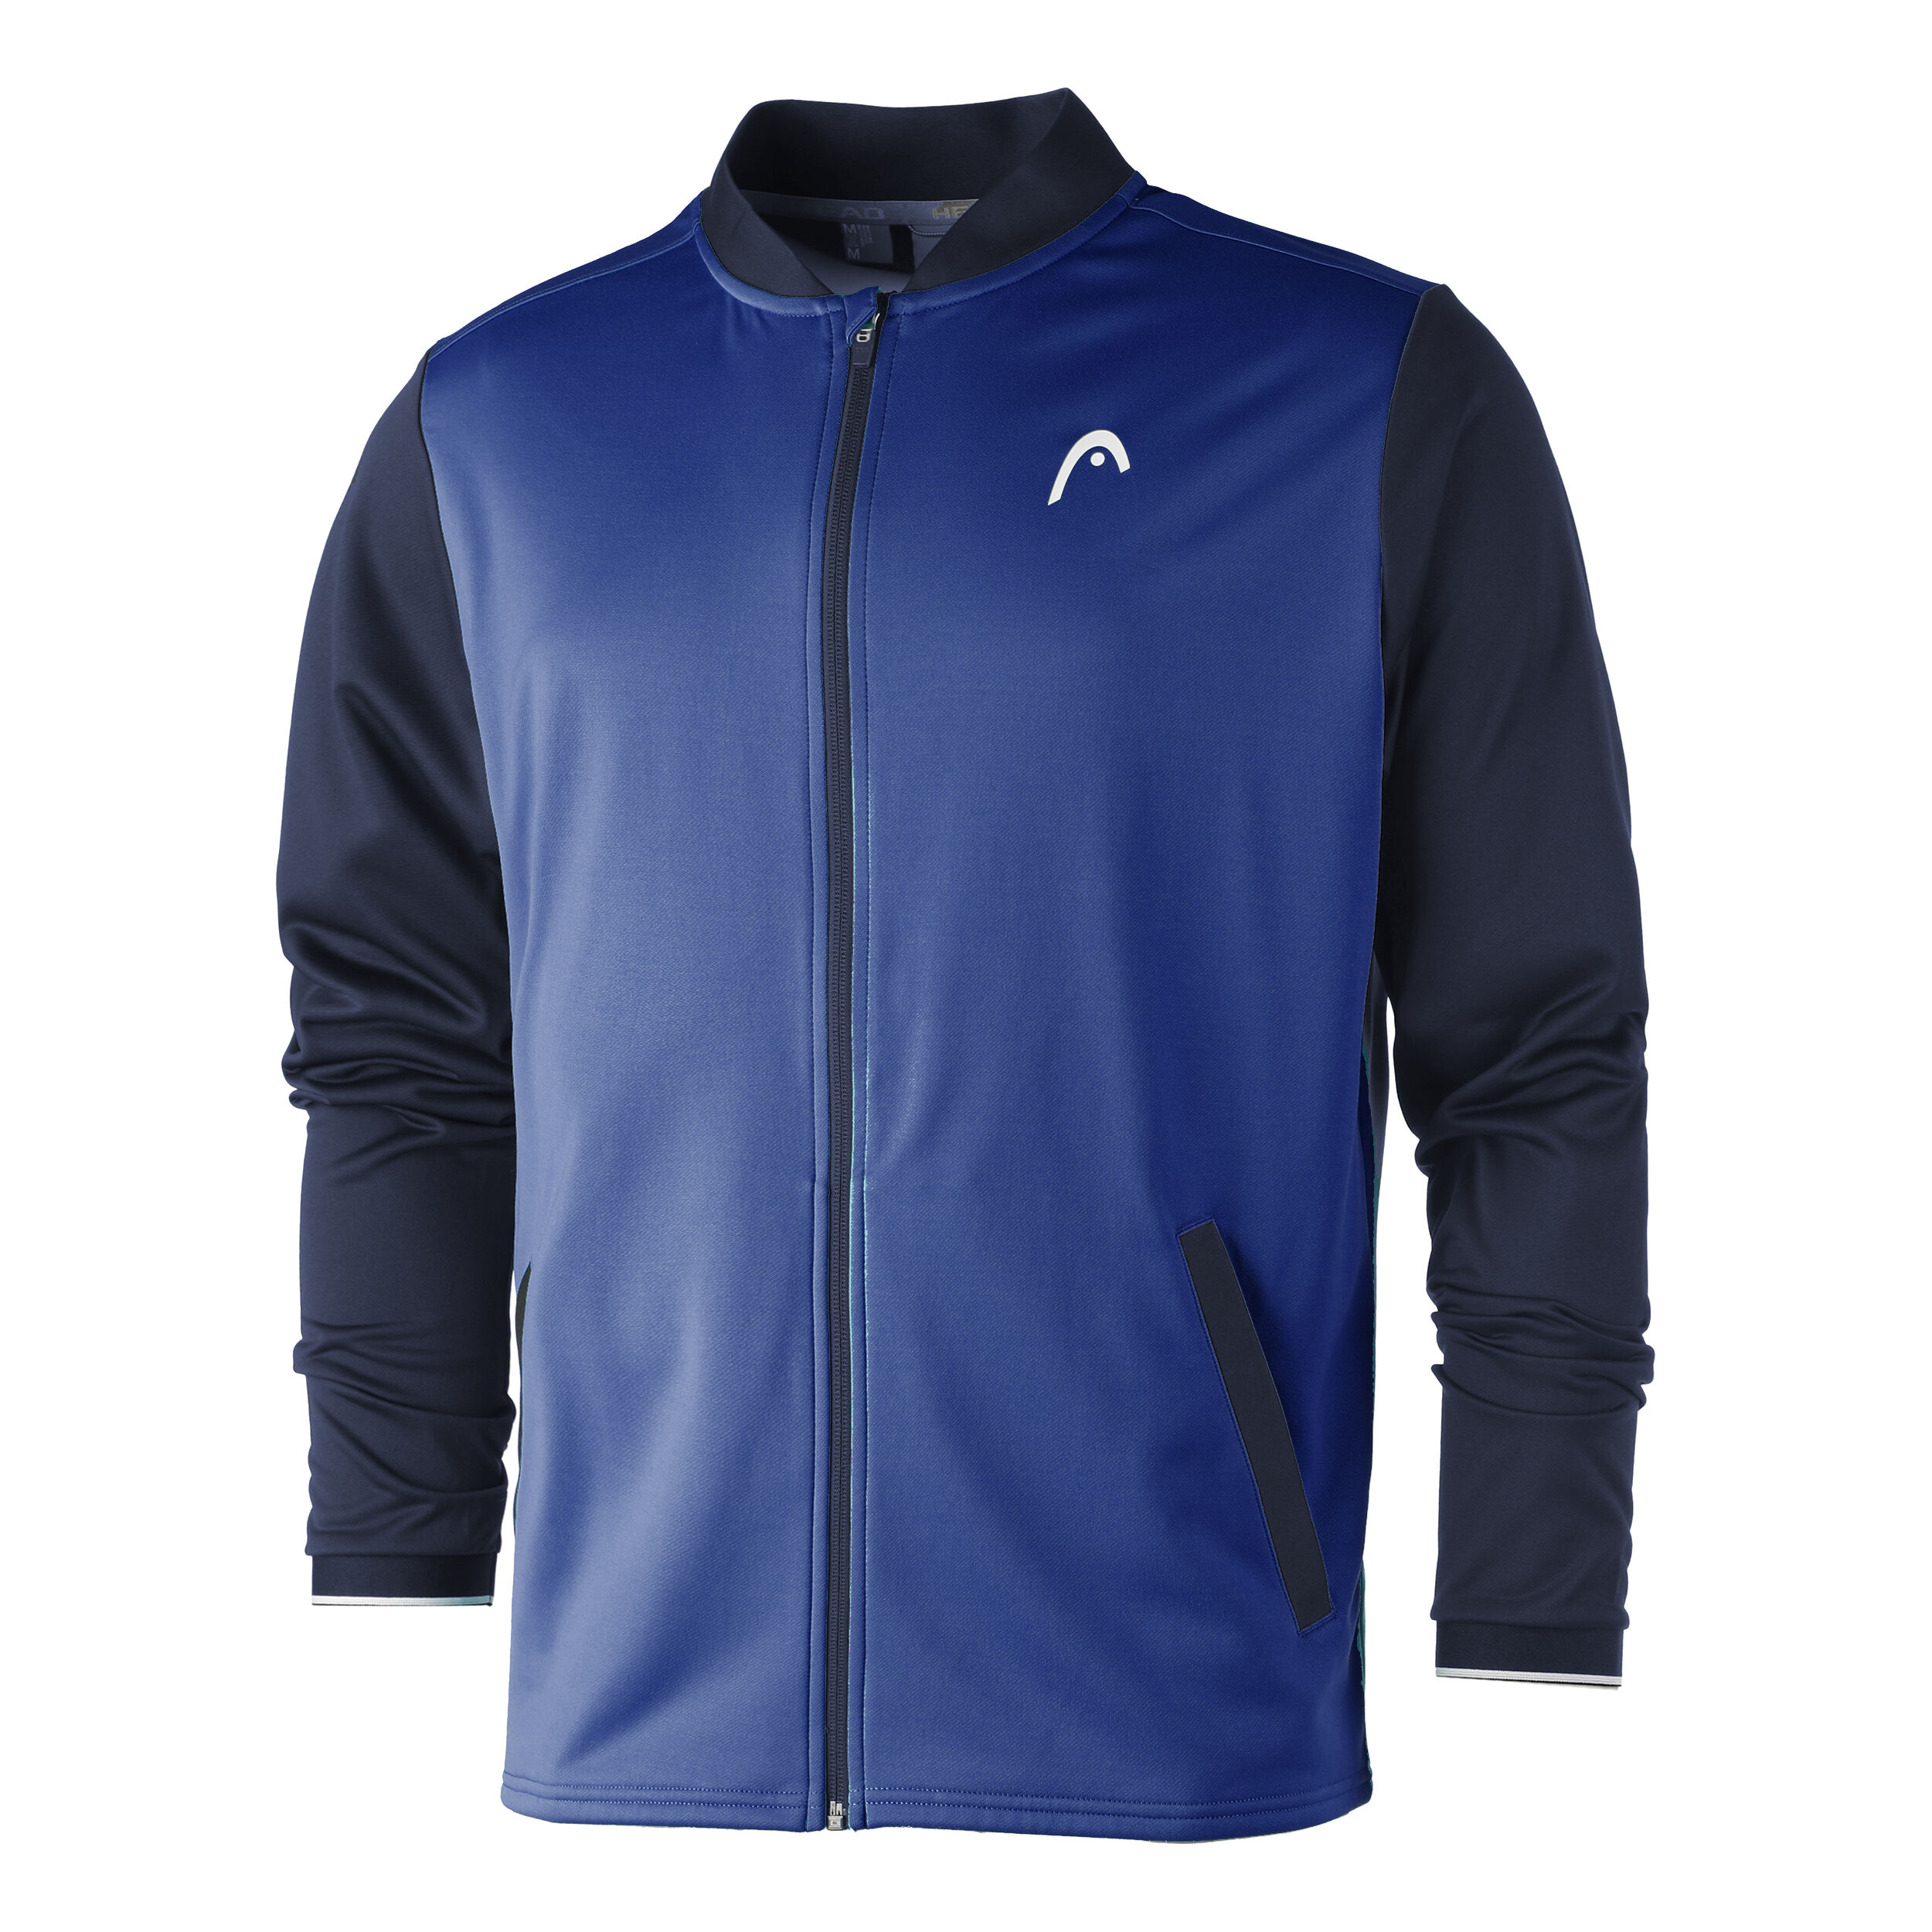 Sport bambino ragazzo e Uomo Tennis/Sport giacca da allenamento con cappuccio/Woven Jacket in blu cobalto a partire da taglia 128 A XXL 